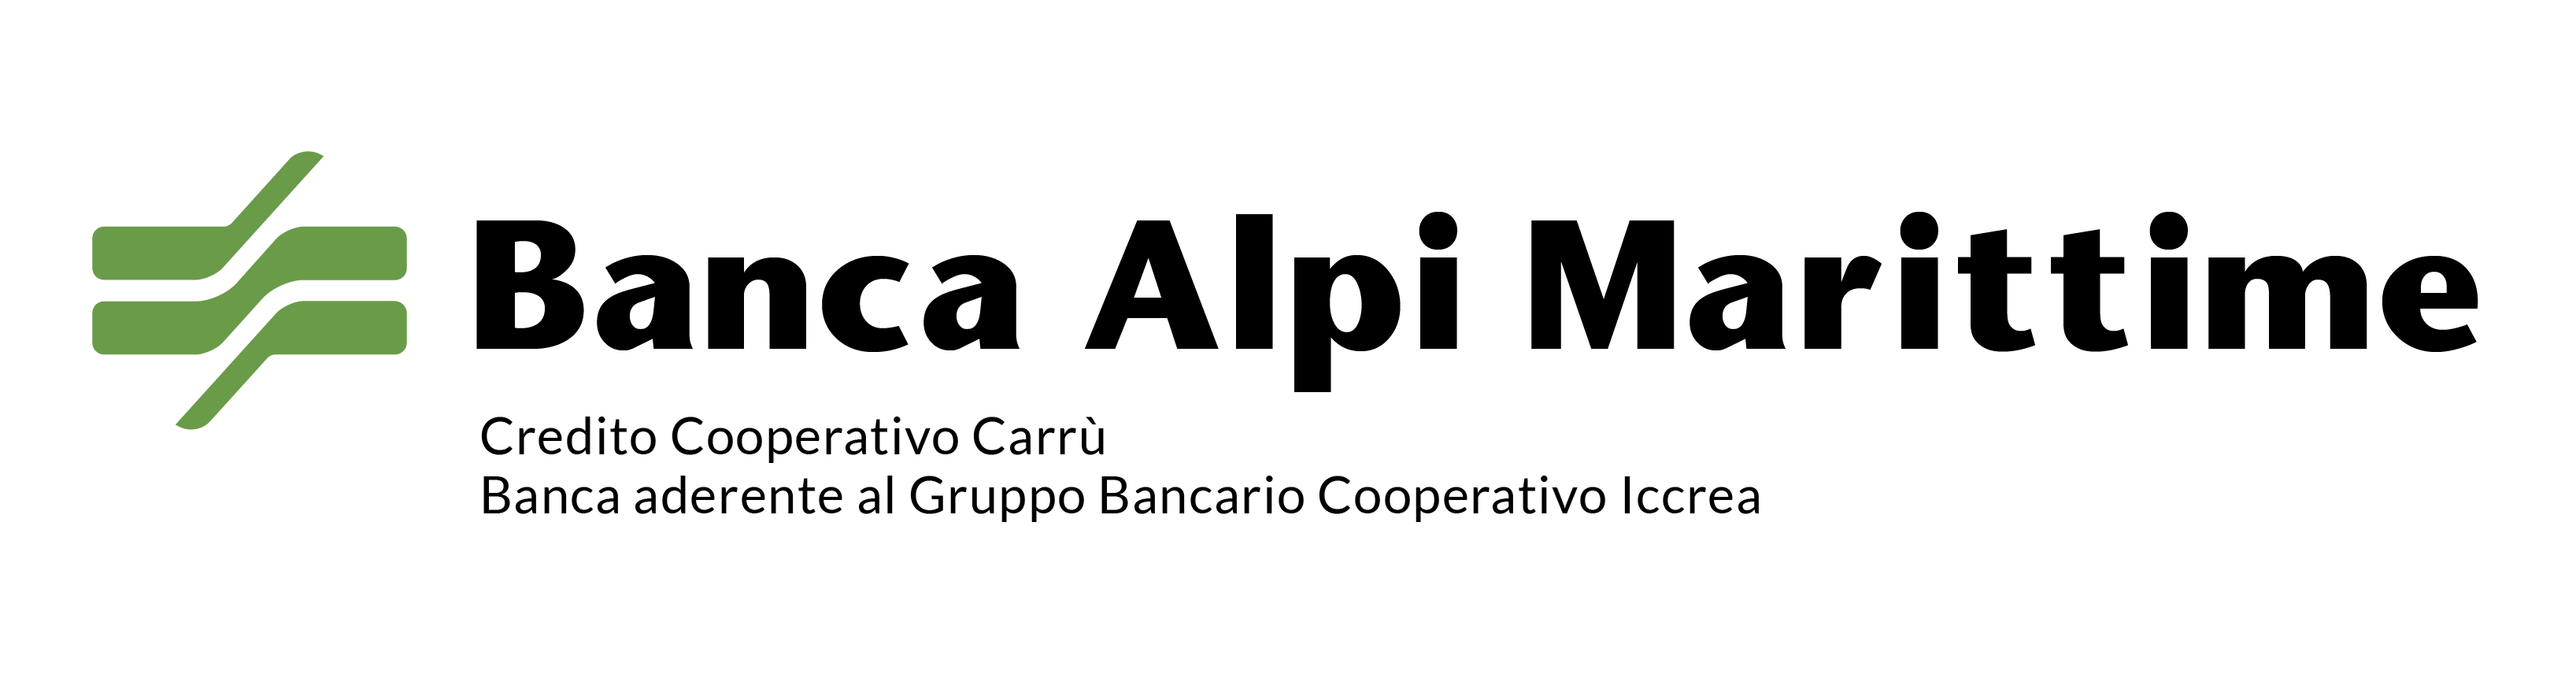 Banca Alpi Marittime Credito Cooperativo Carru S.c.p.A. ロゴ